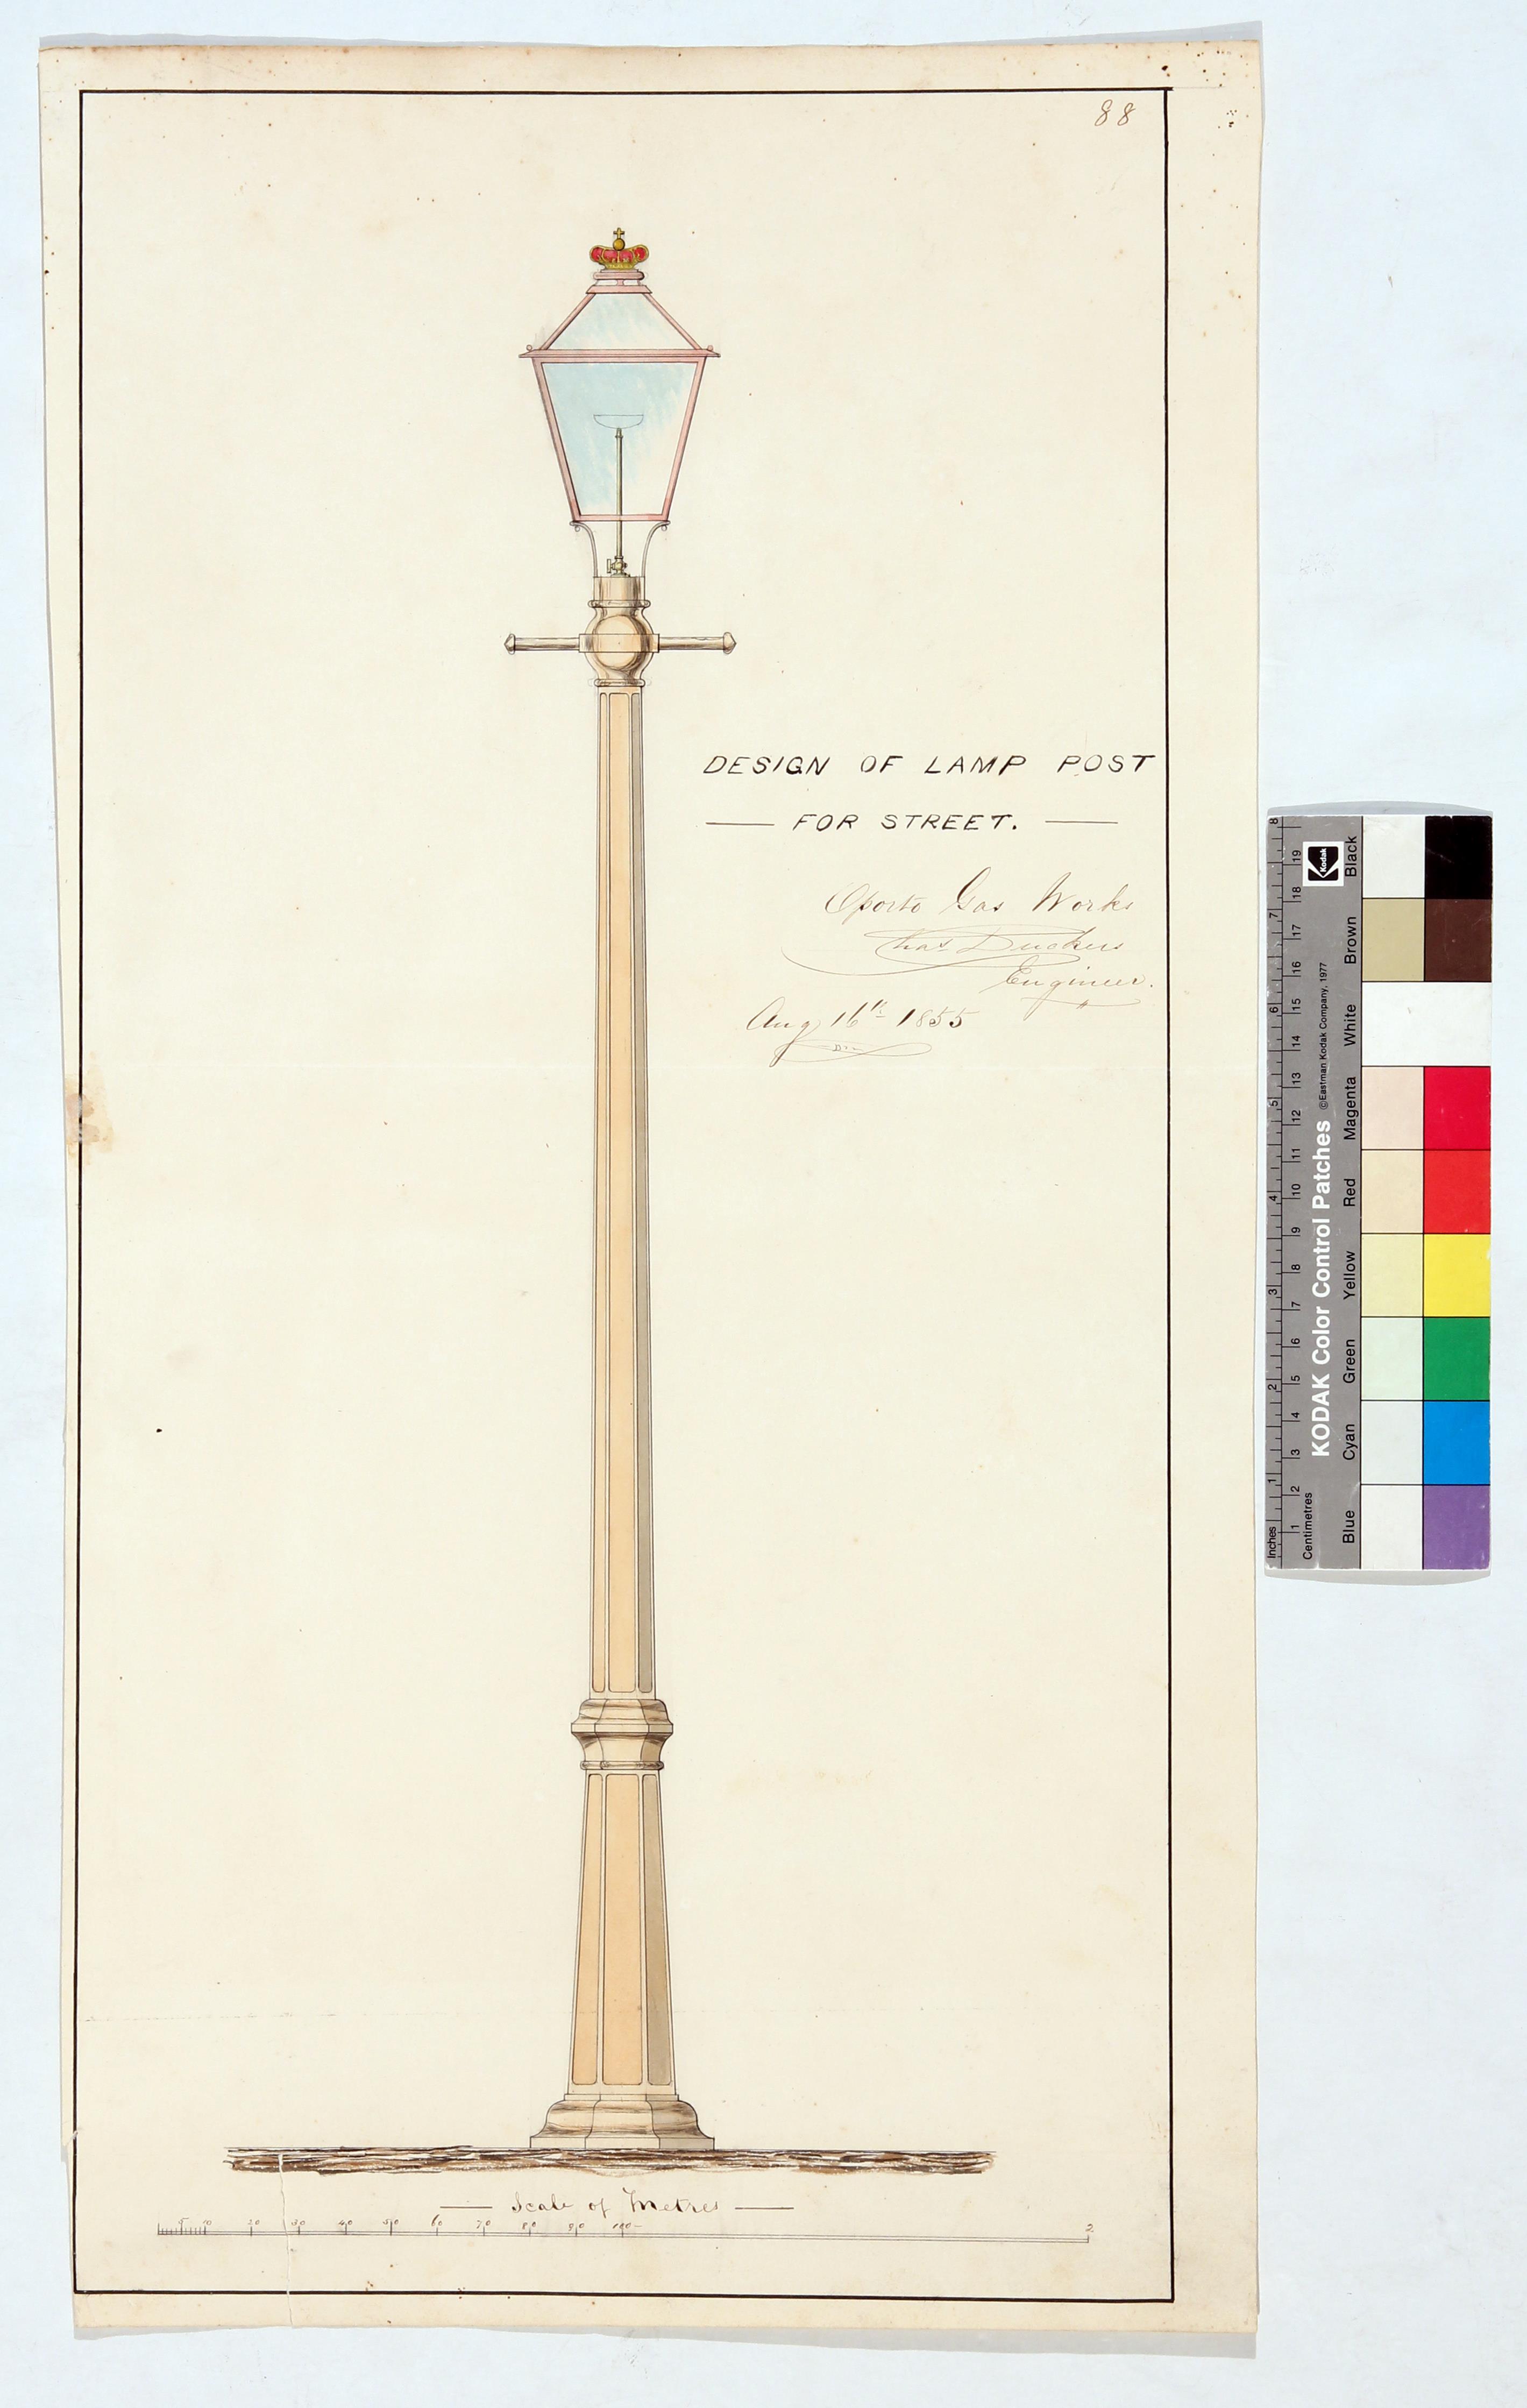 Design of lamp post for street ()